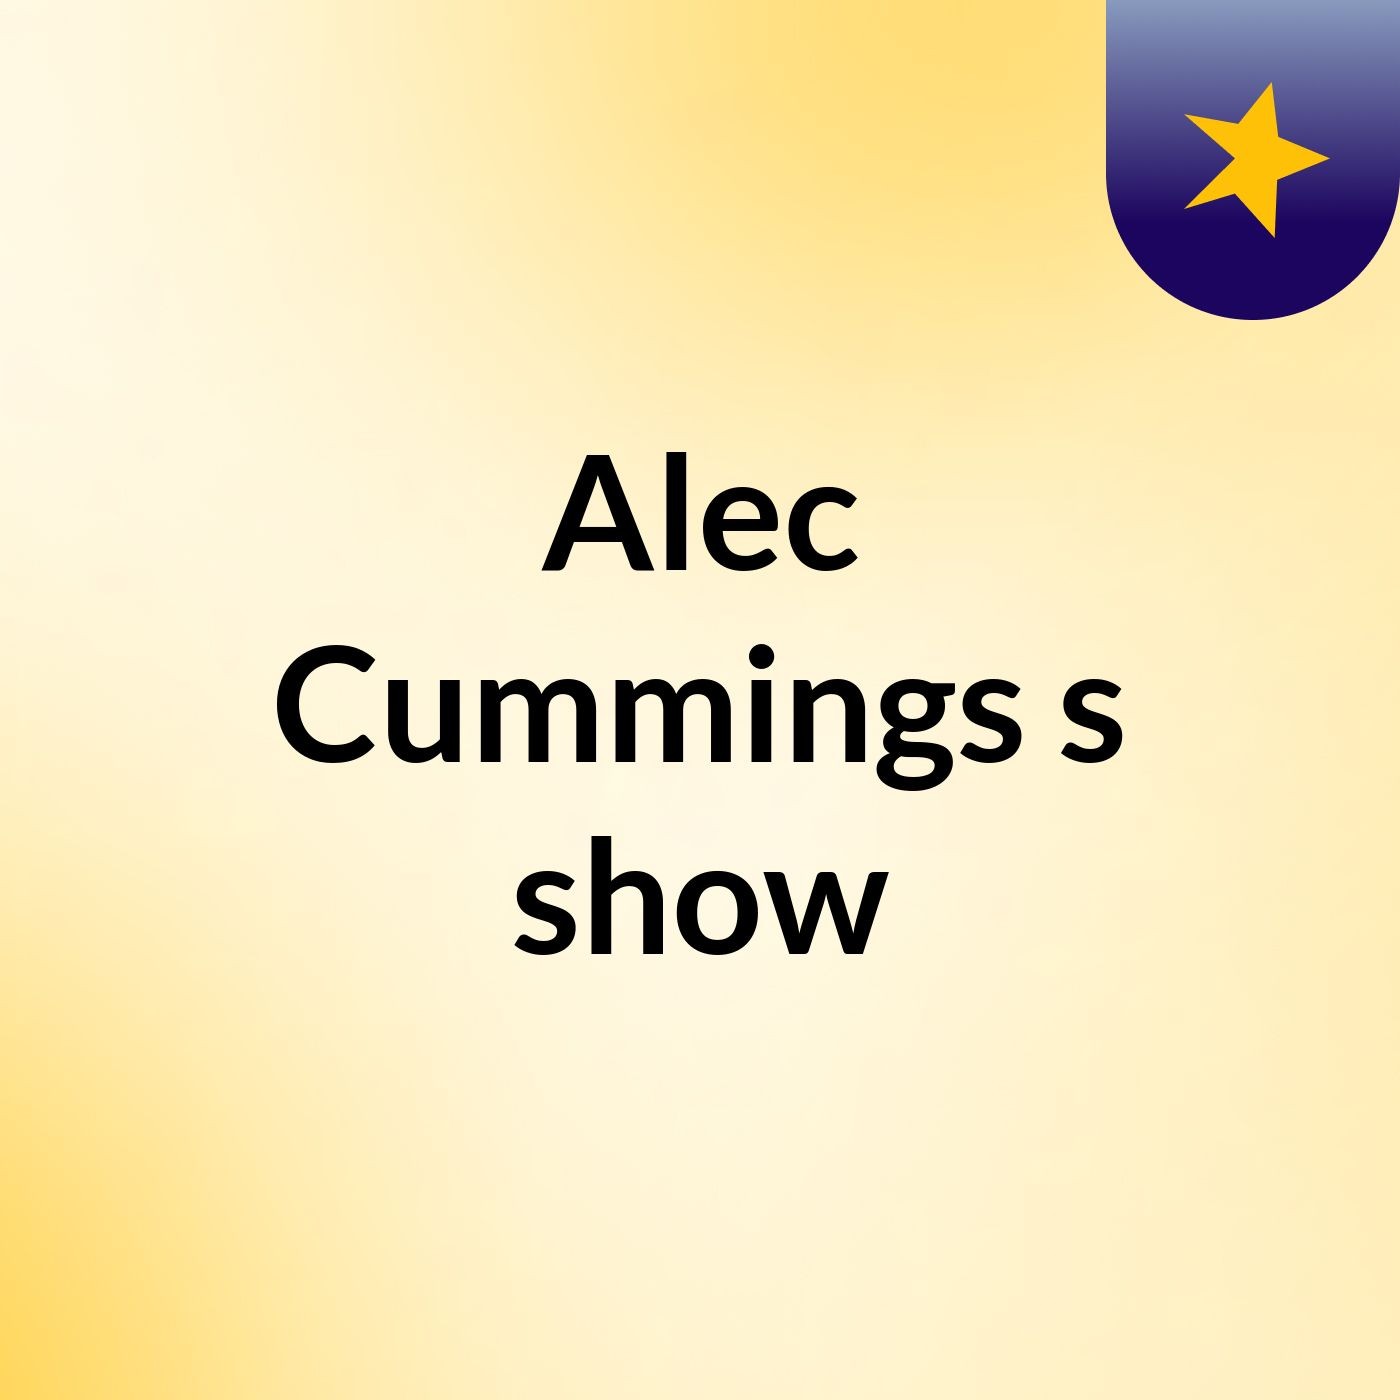 Alec Cummings